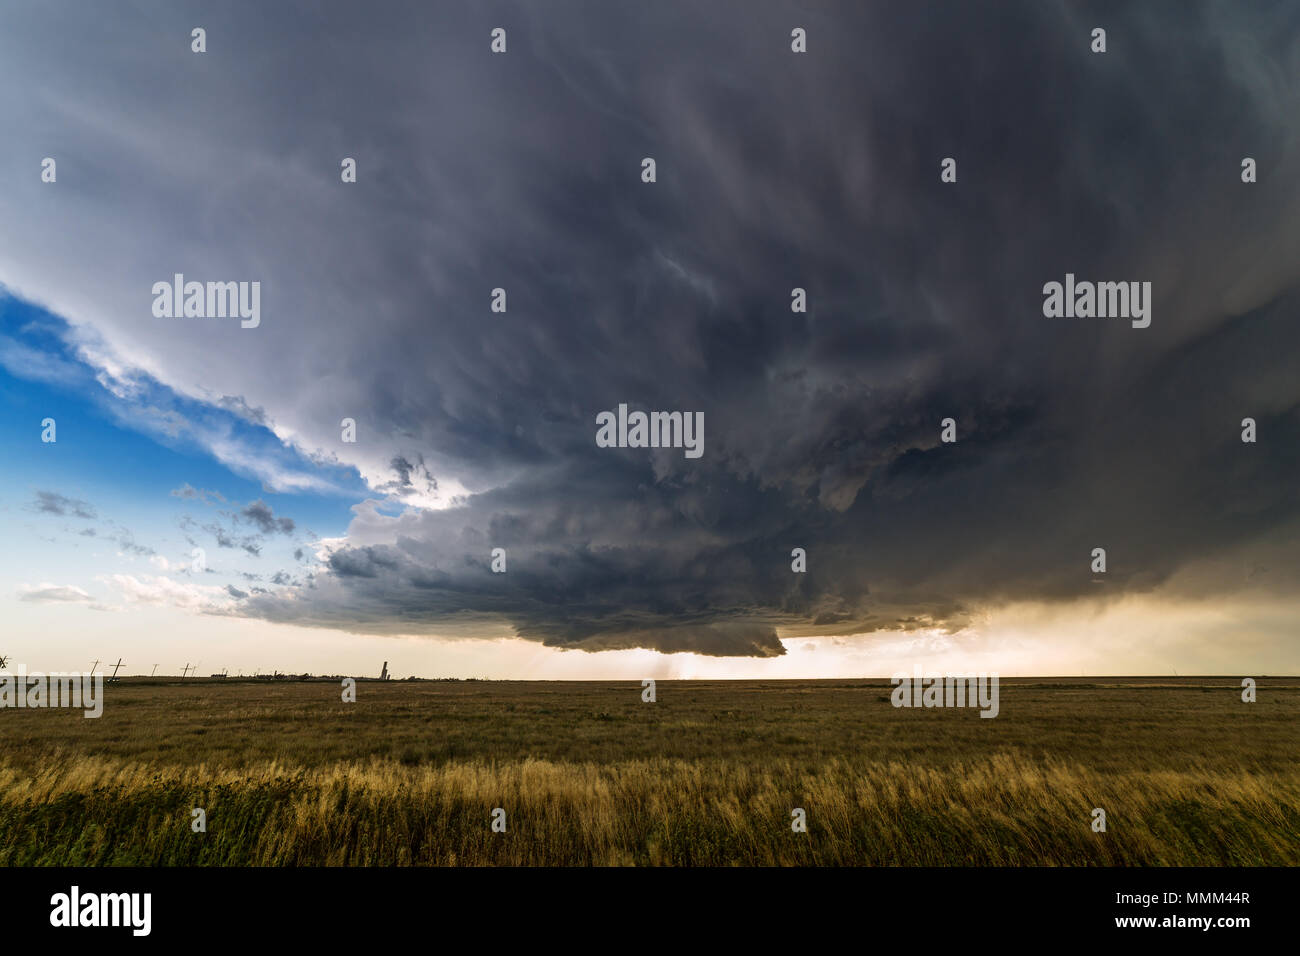 Eine dunkle, dramatische Wandwolke und ein supercell-Gewitter in den Ebenen in Colorado Stockfoto